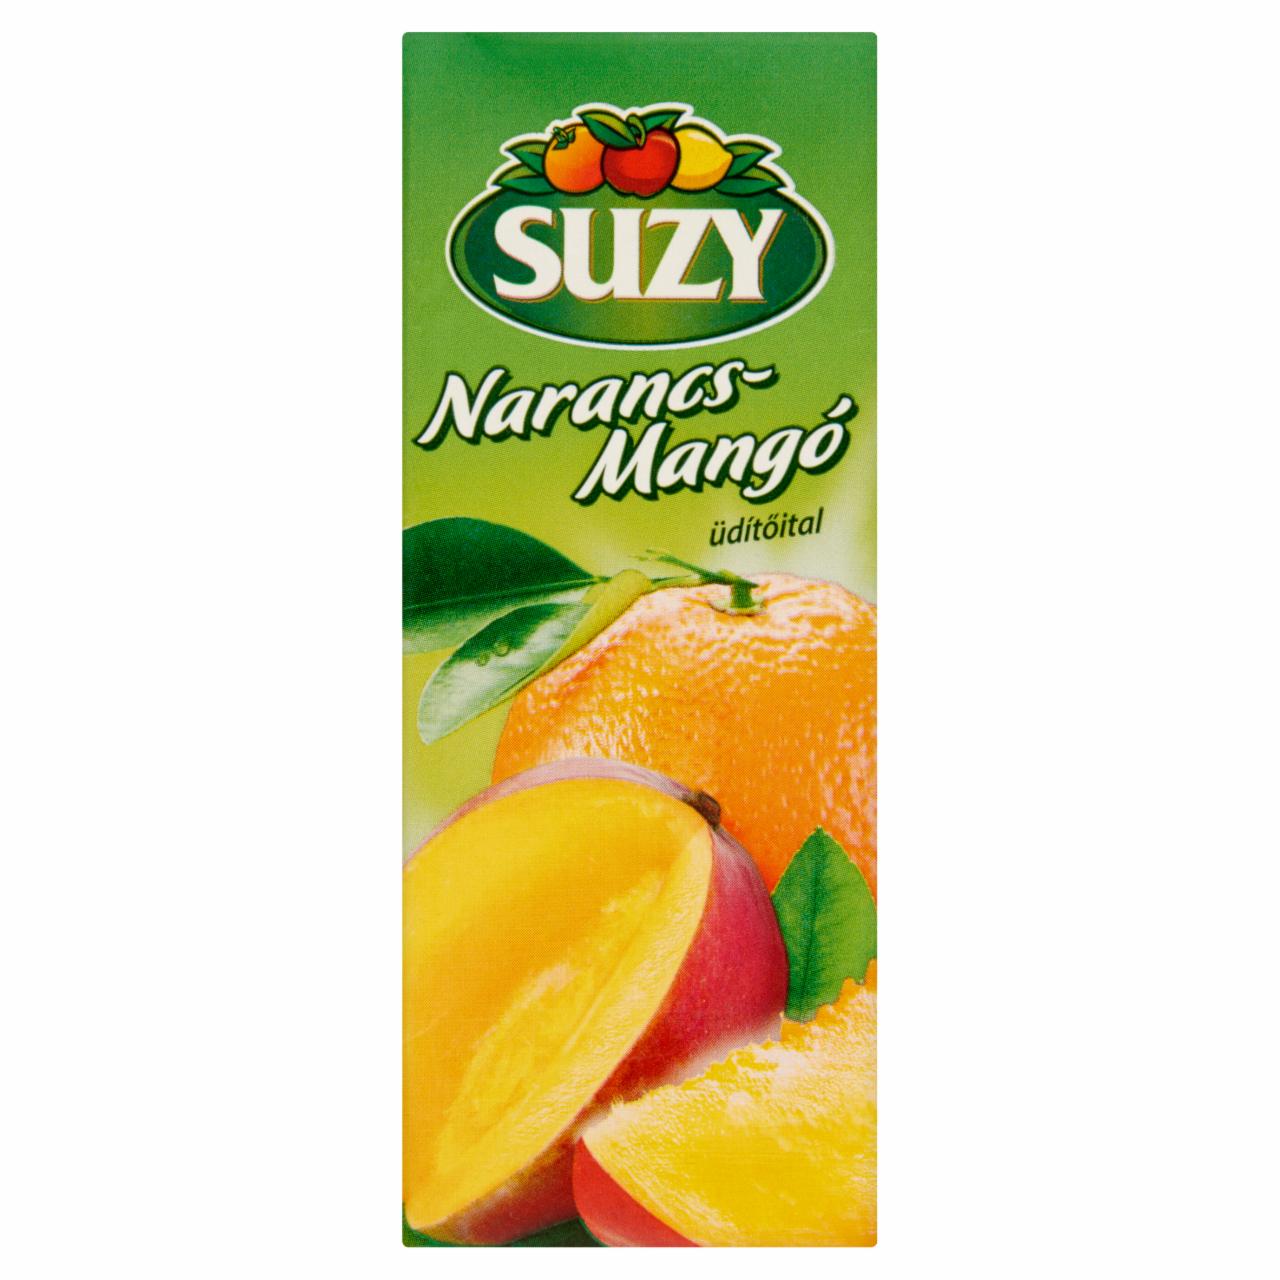 Képek - Suzy narancs-mangó üdítőital cukorral és édesítőszerekkel 0,2 l